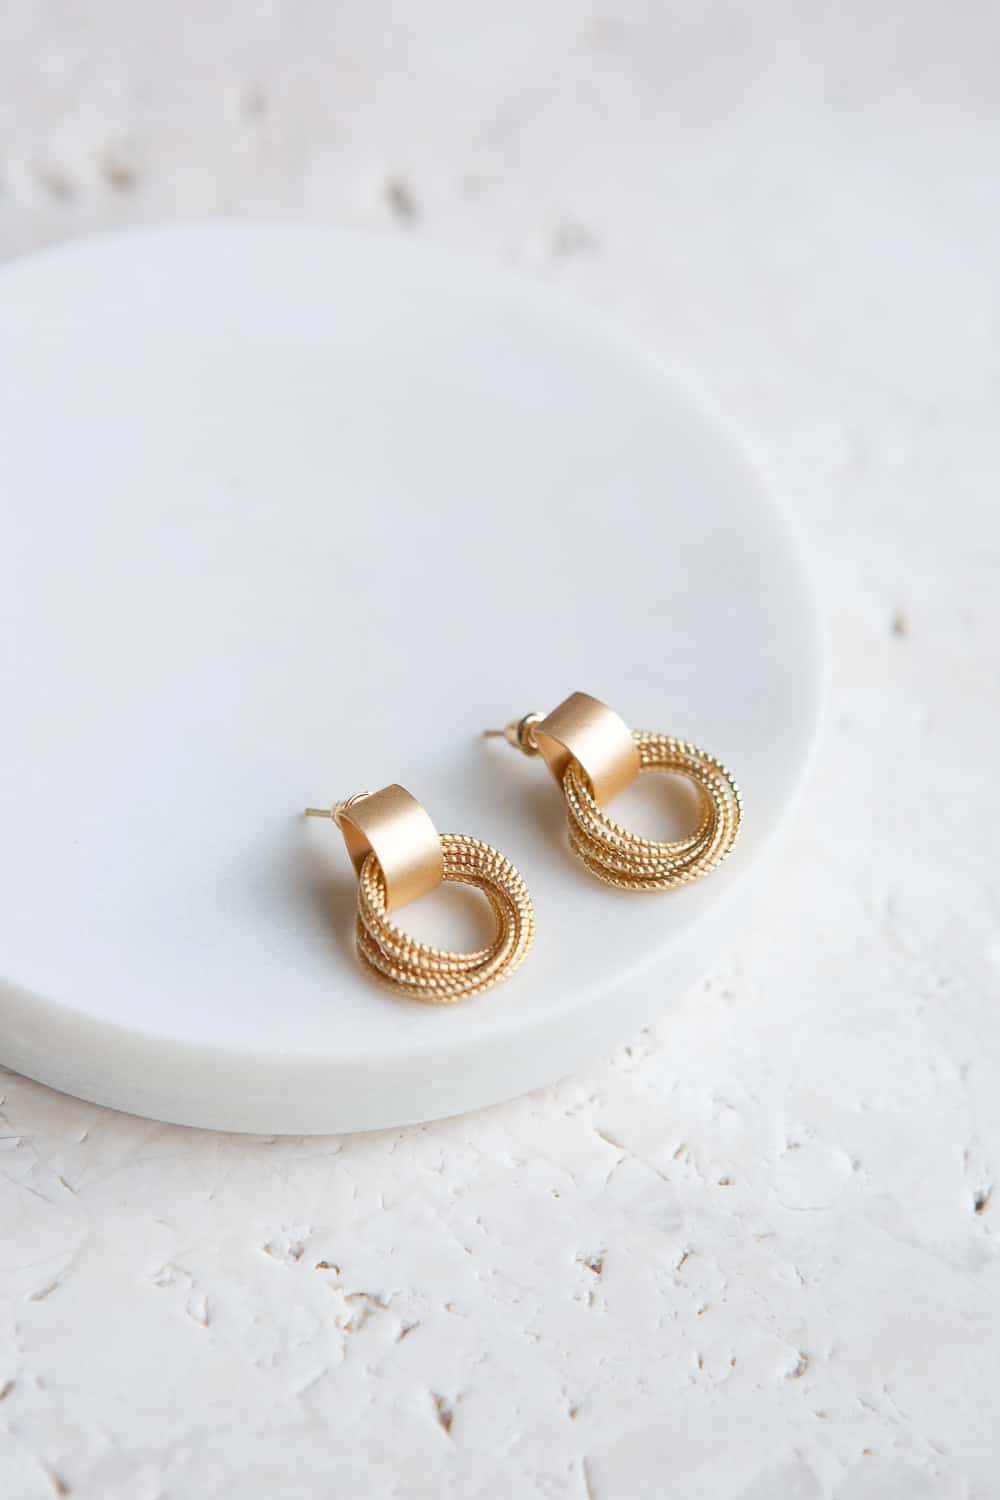 Stacked Circular Rings Stud Earrings - Wynter Bloom